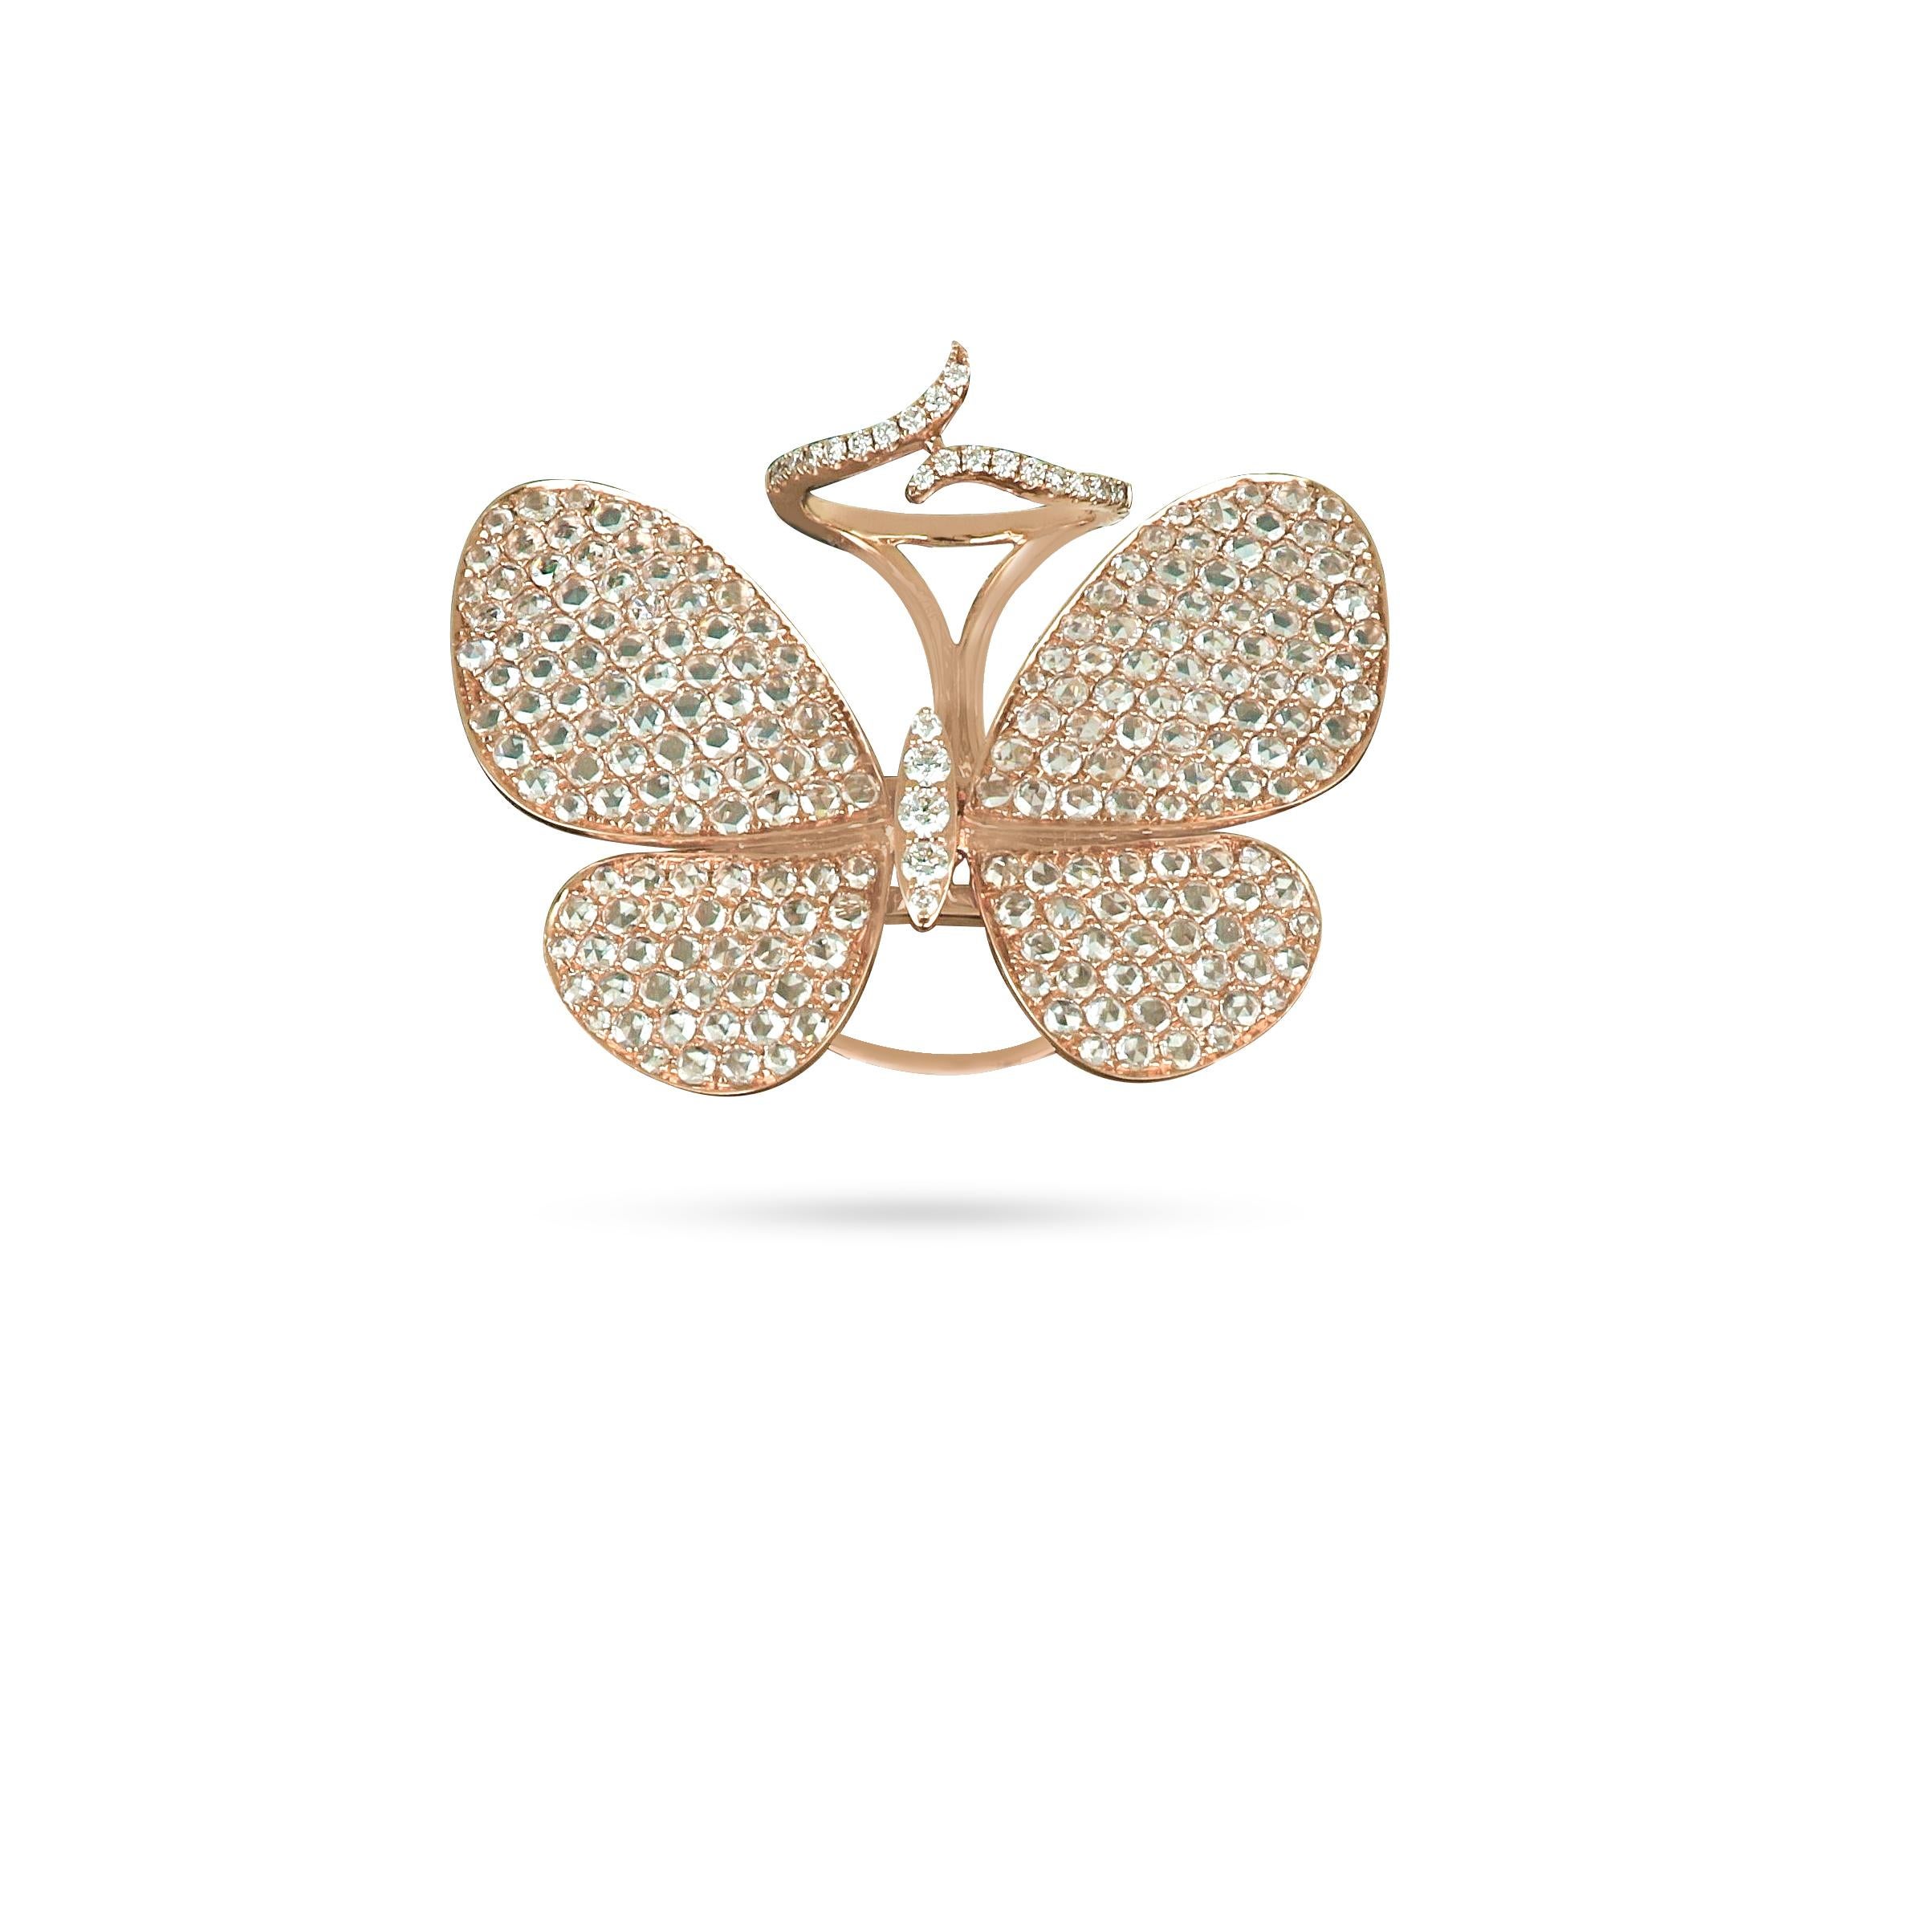 Expression parfaitement proportionnée du motif du papillon, la bague papillon Amwaj en or rose 18 carats présente une disposition classique de diamants ronds légèrement inclinés pour capturer la délicatesse des ailes d'un papillon. Des diamants